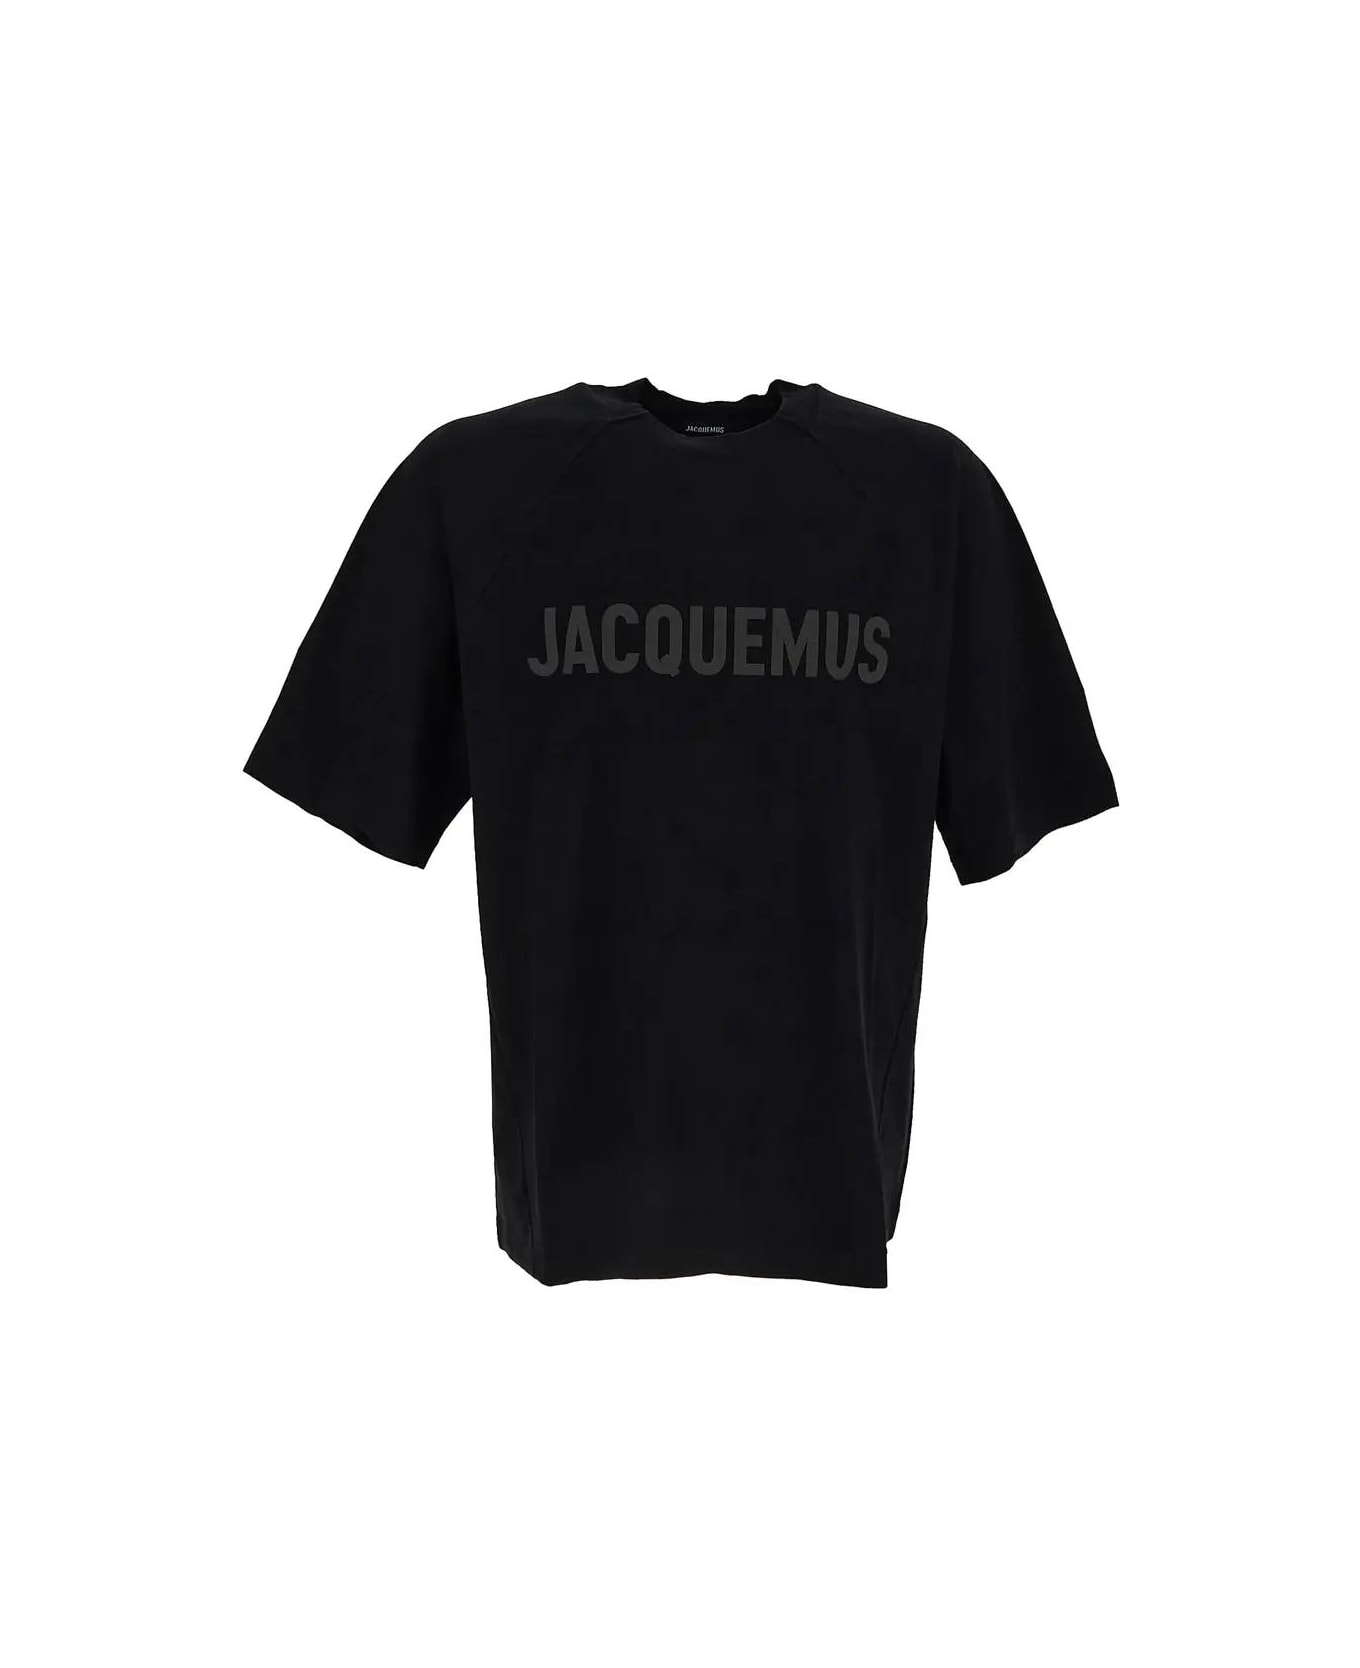 Jacquemus T-shirt - Black Tシャツ